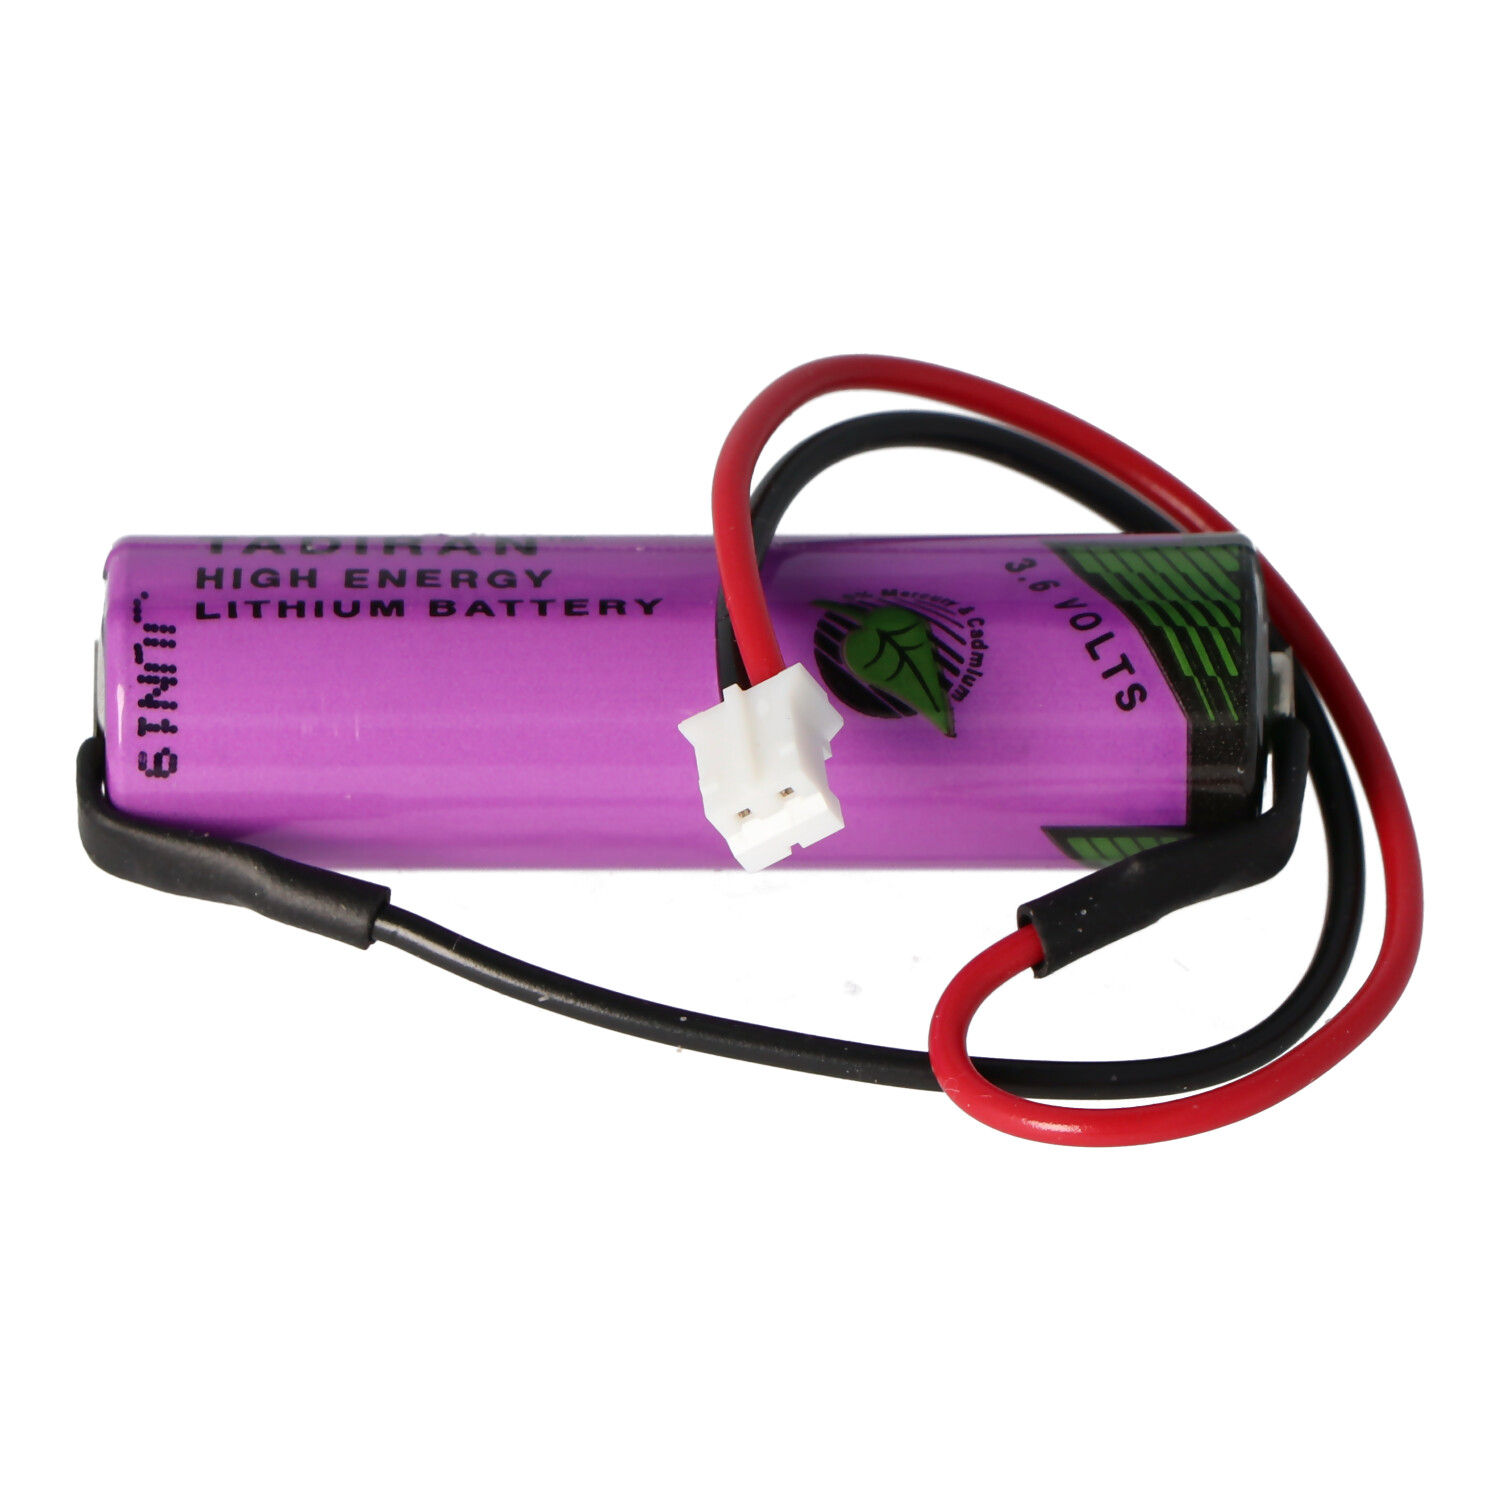 Ersatzbatterie passend für die Testo Datenlogger 175-T1 Batterie mit Kabel und Stecker